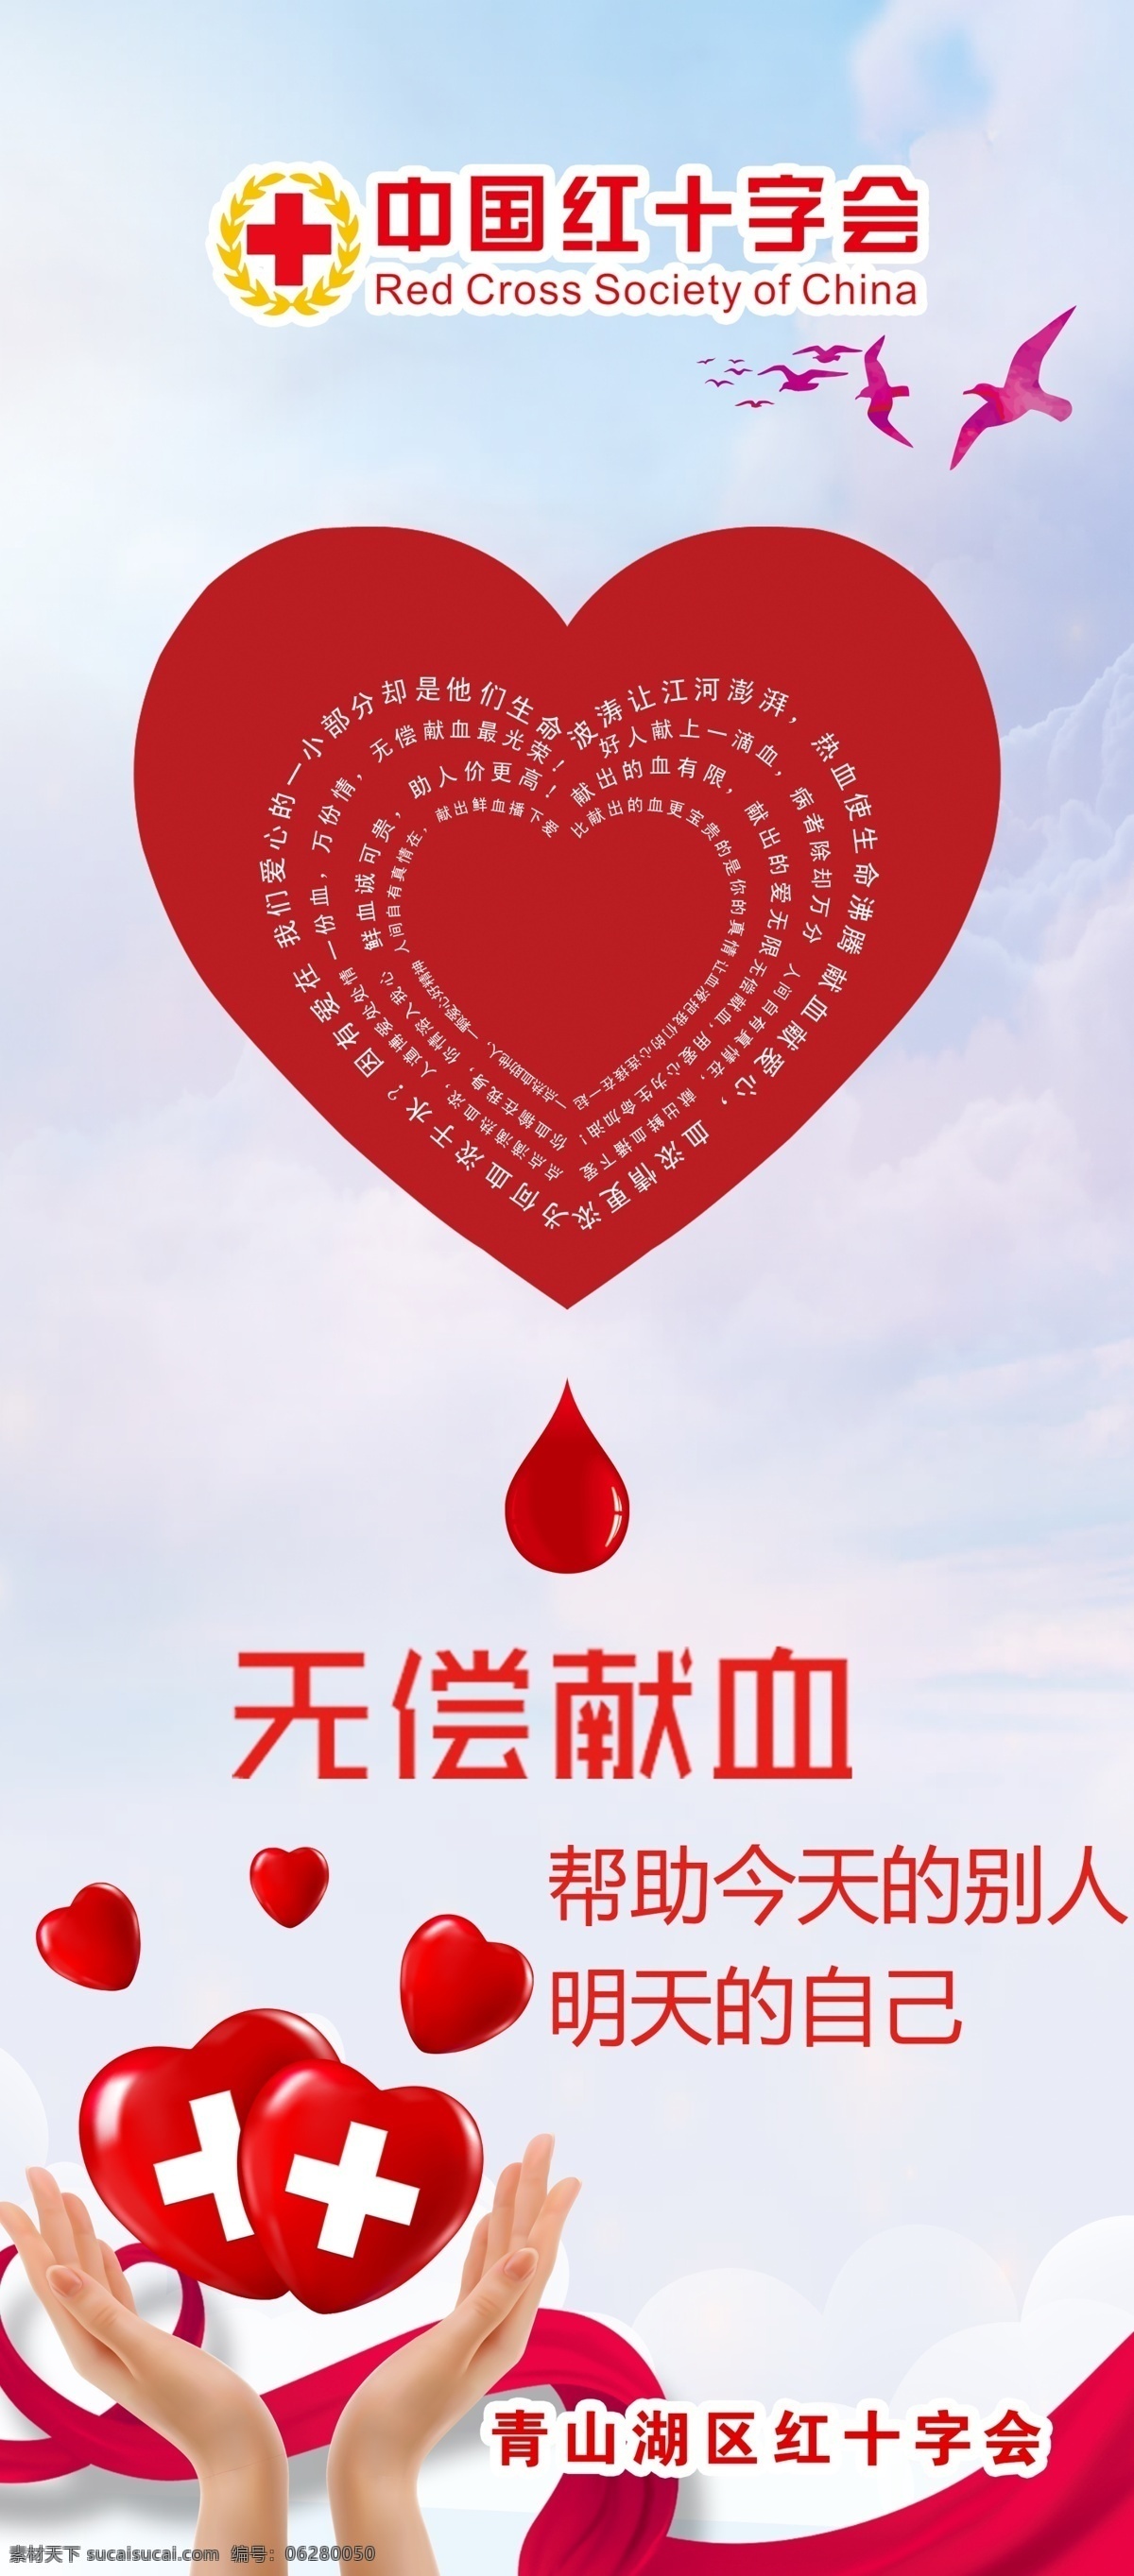 红十字会图片 红十字会 爱心 救援 99日 丝带 救助站 腾讯公益 海报广告